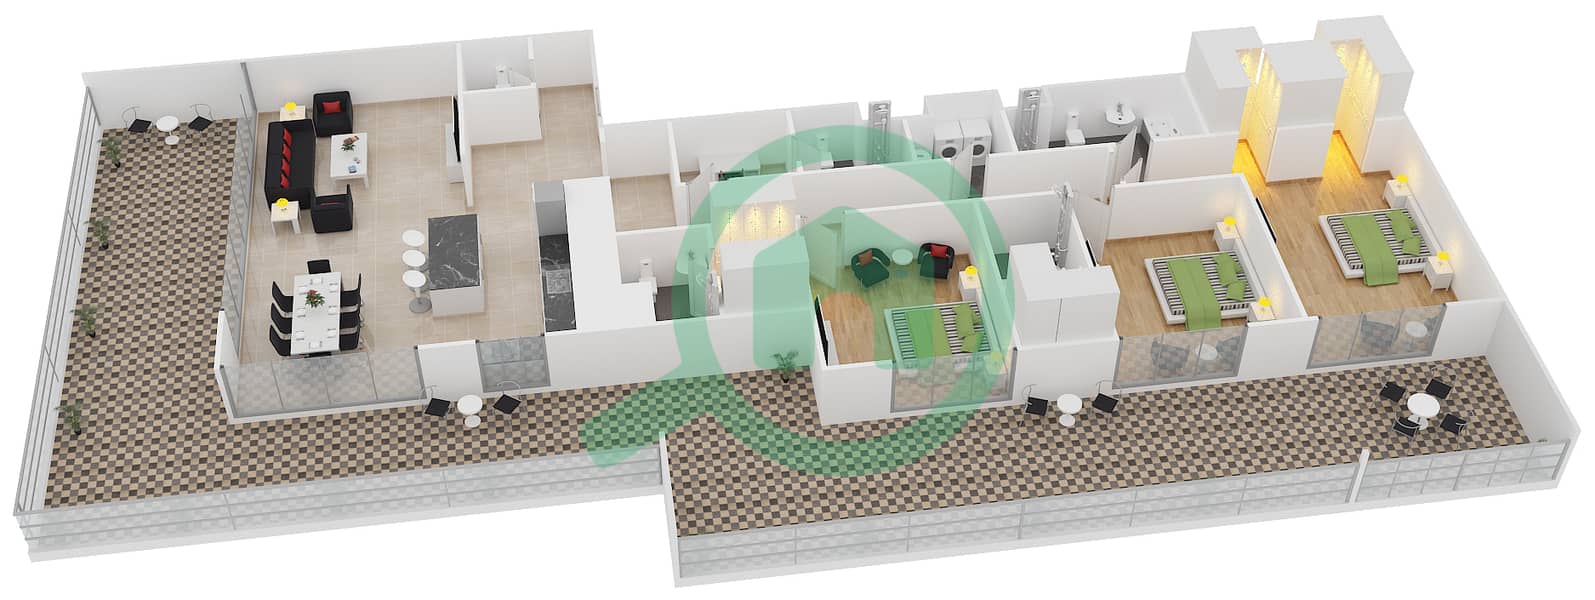 Belgravia - 3 Bedroom Apartment Type 15 Floor plan interactive3D